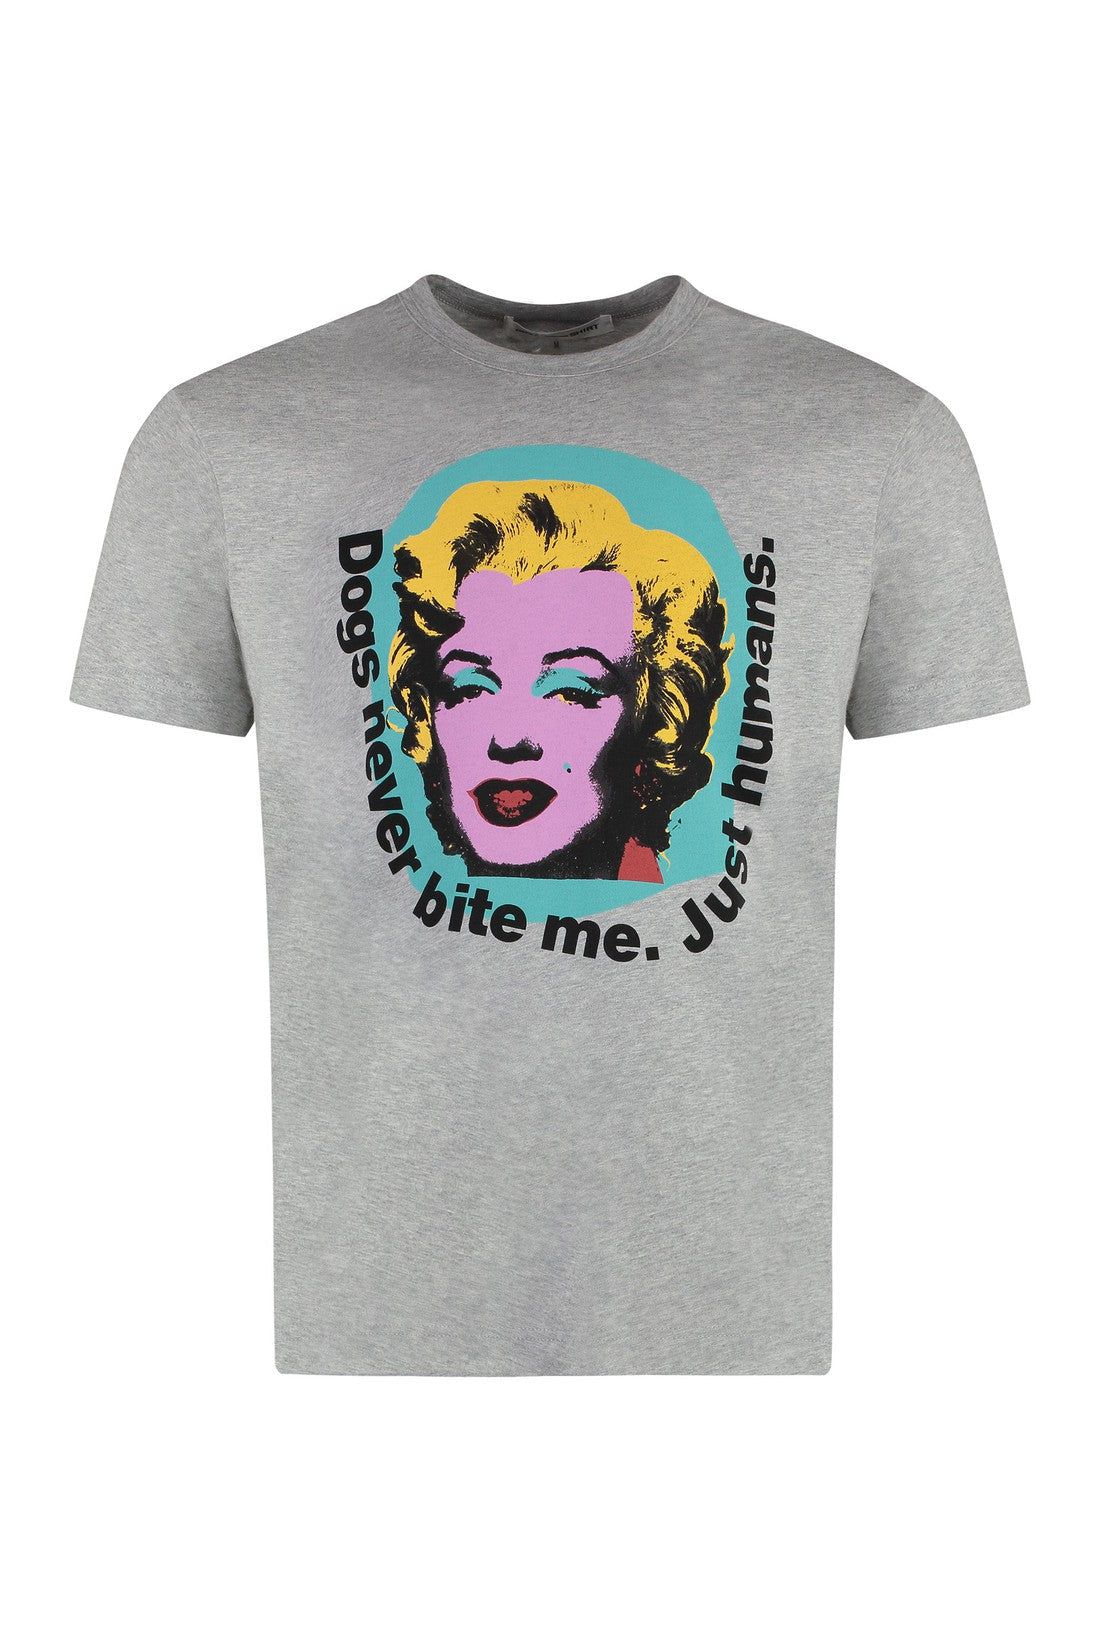 Comme des Garçons SHIRT-OUTLET-SALE-Andy Warhol print cotton t-shirt-ARCHIVIST